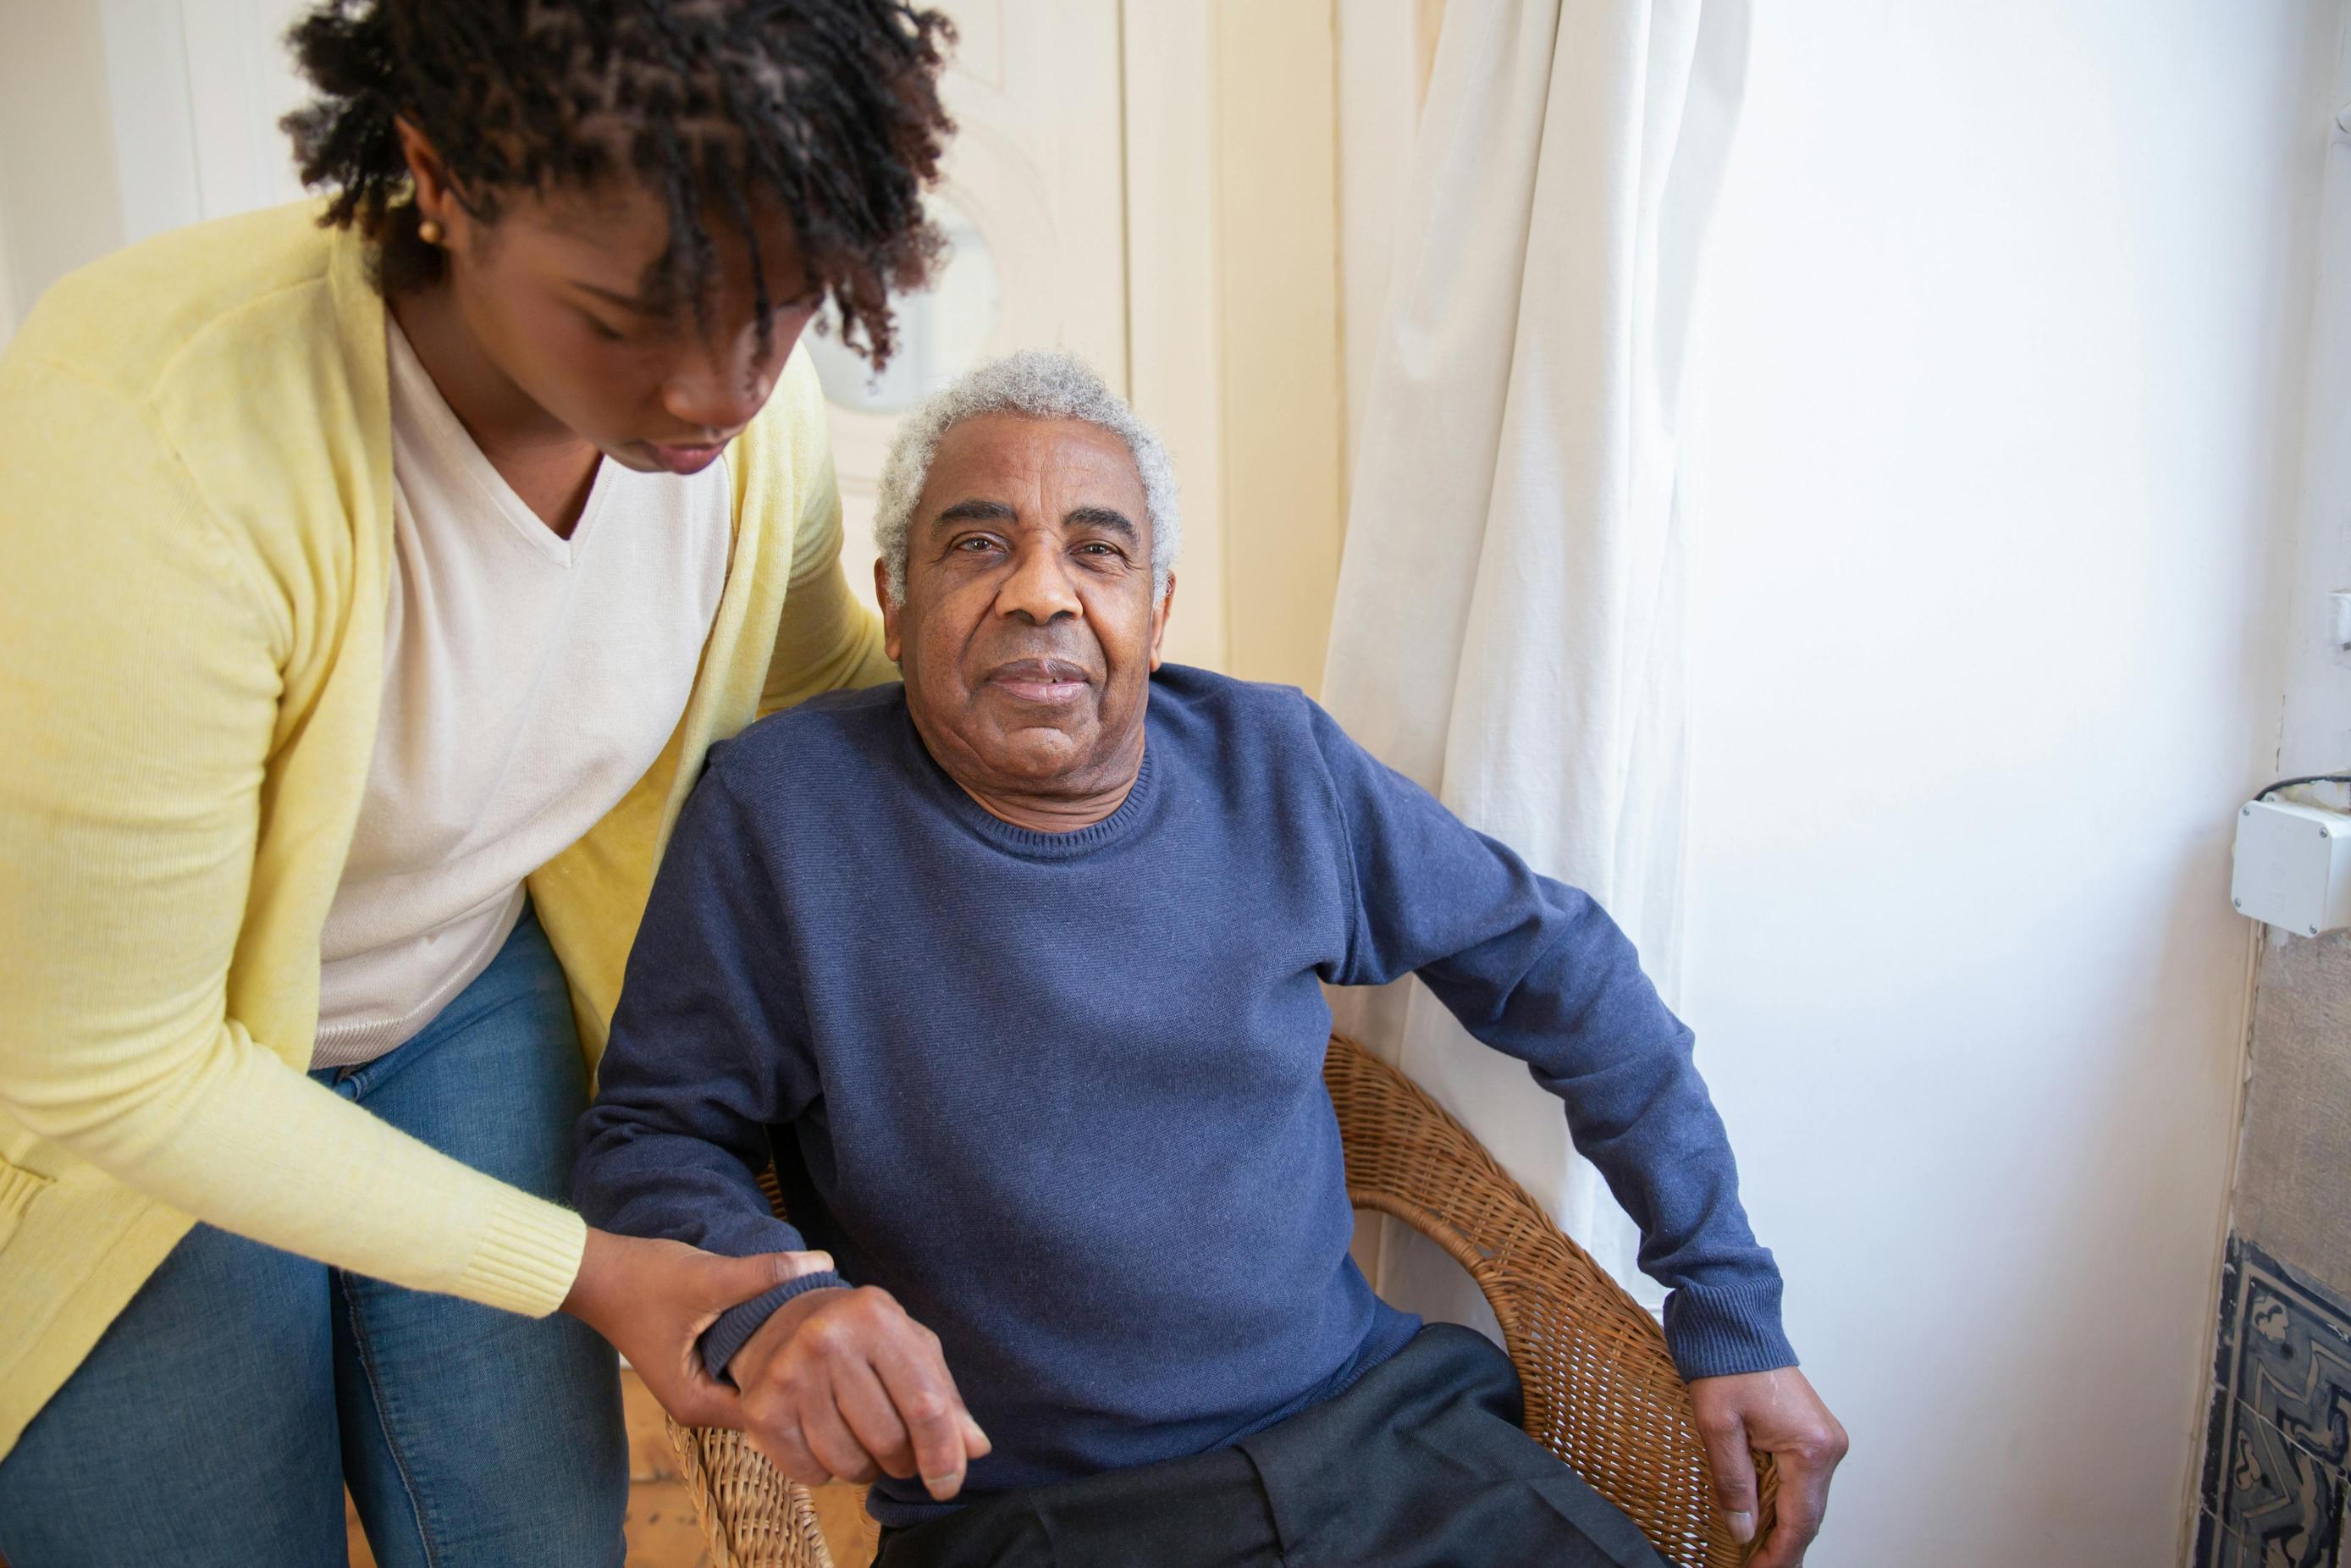 Kryteria wyboru odpowiedniego programu pomocy dla osób starszych